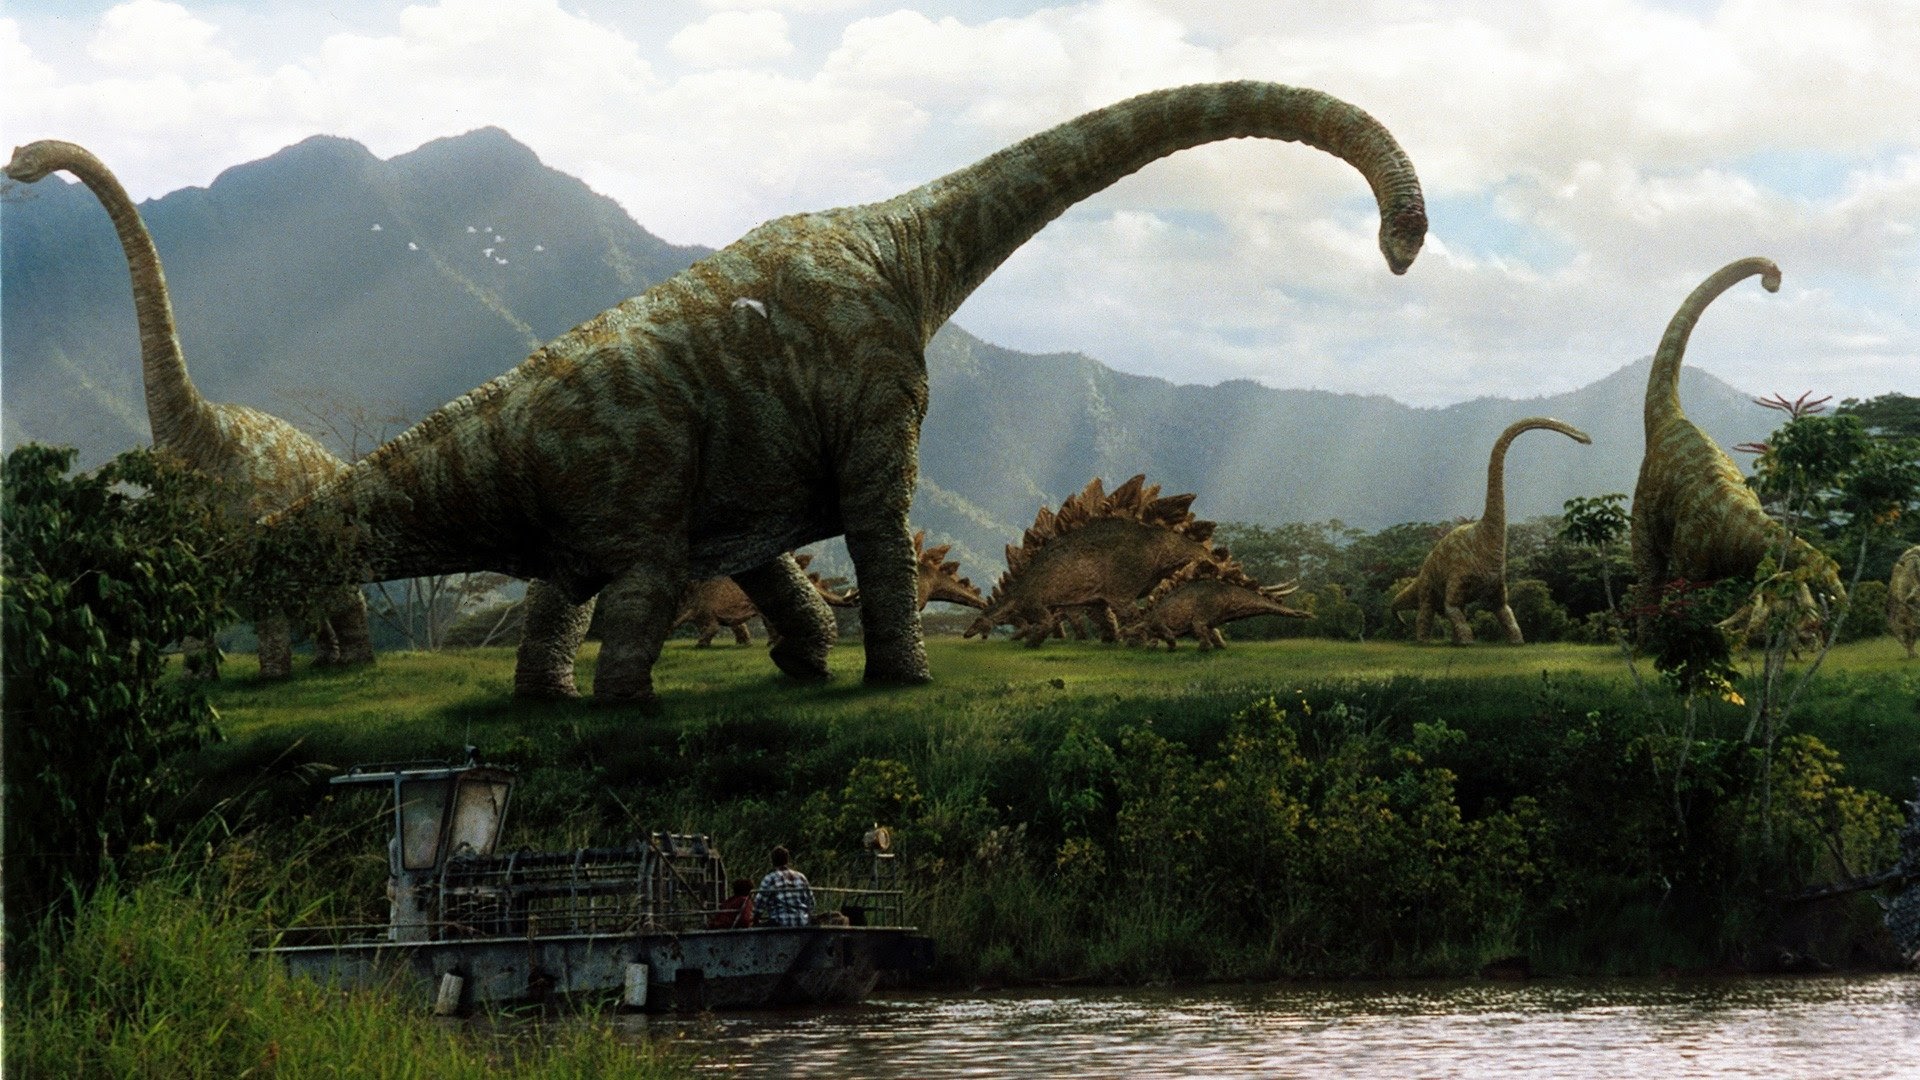 Jurassic Park III - Películas en Google Play